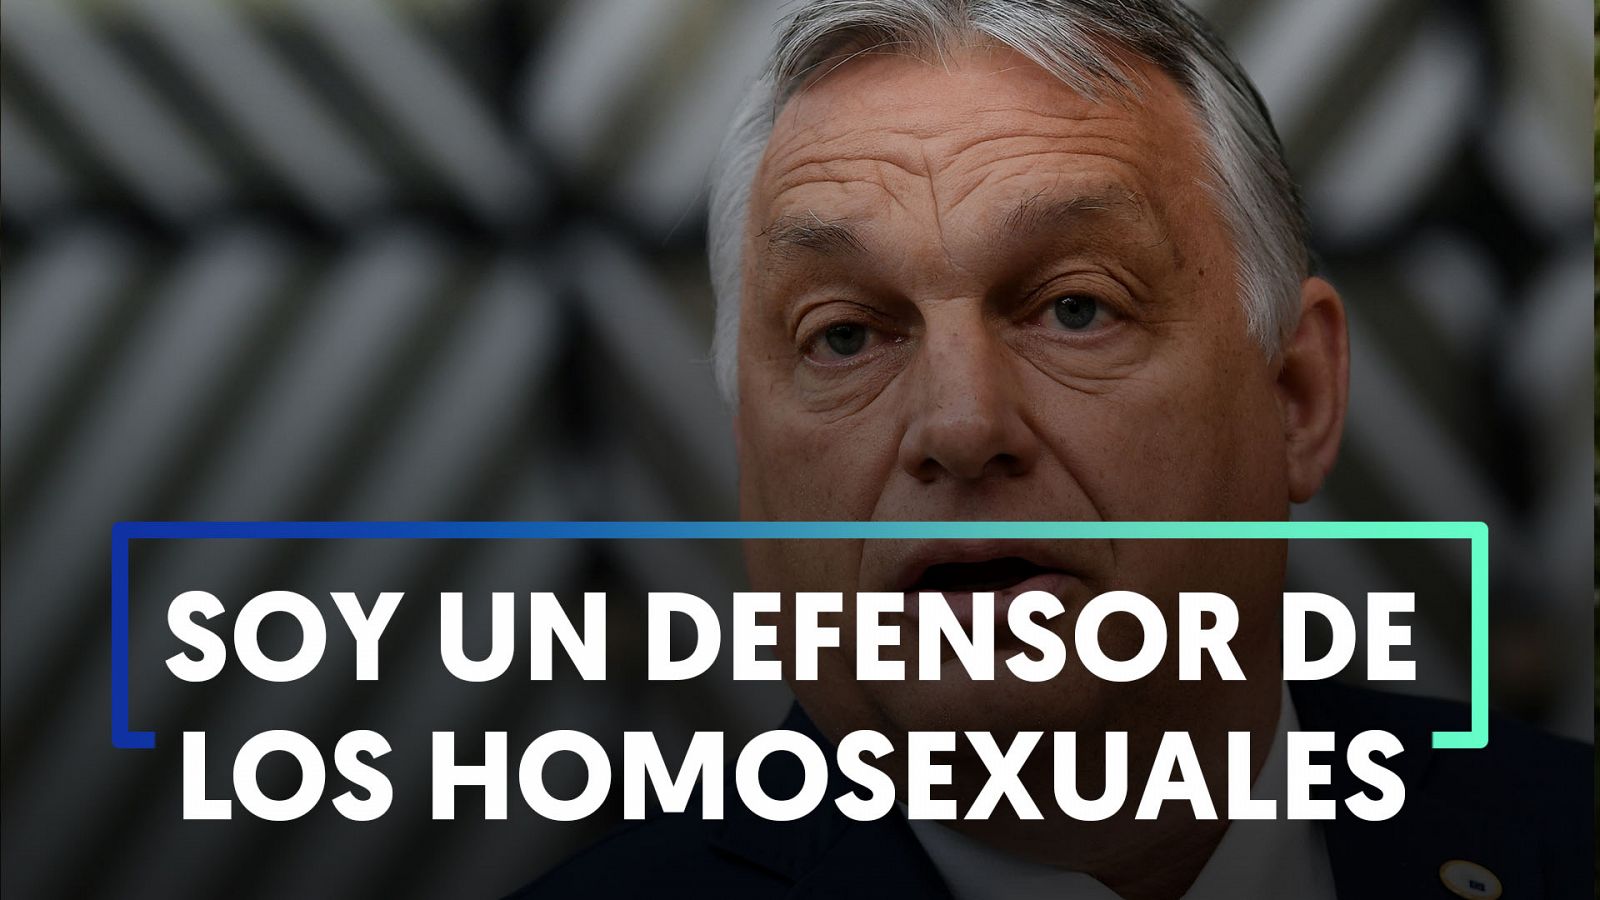 Orbán rechaza las críticas y dice que es un defensor de los homosexuales  - RTVE.es